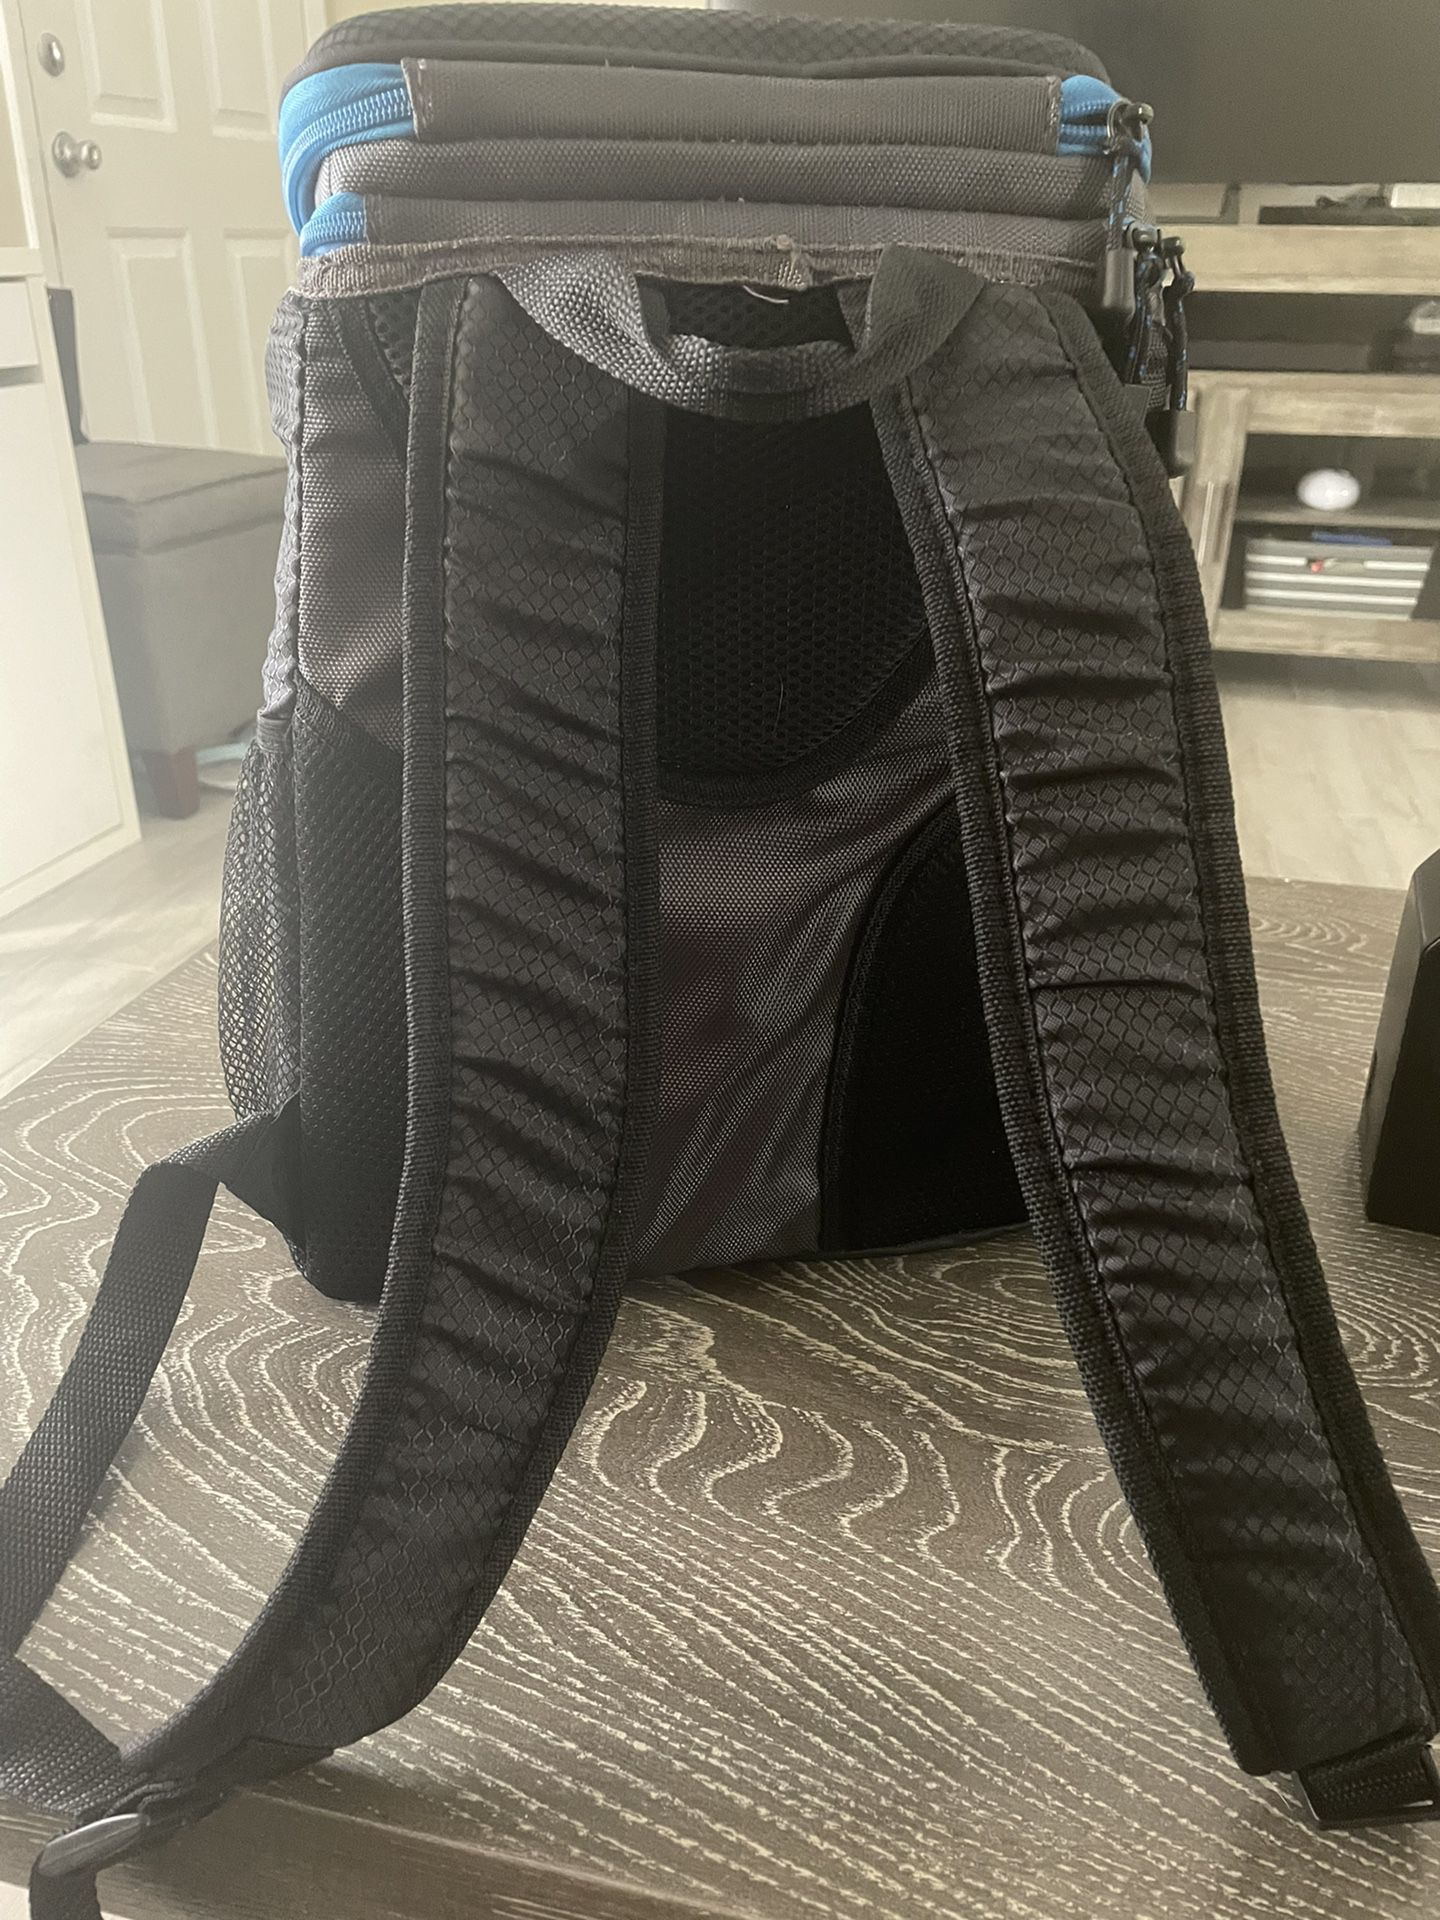 Igloo Cooler Backpack 